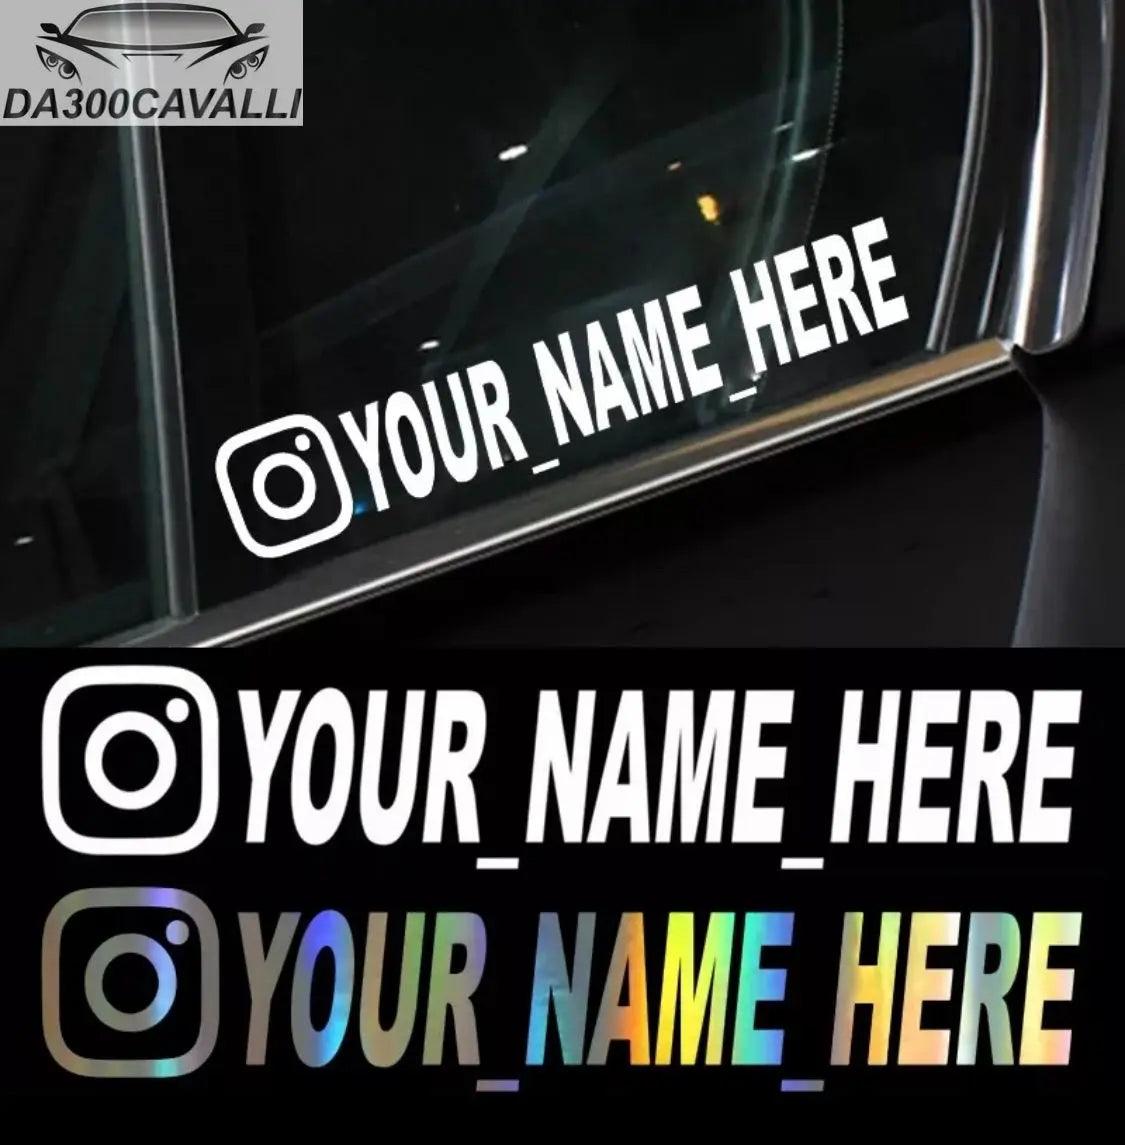 Sticker Personalizzato Tag Instagram - Da300Cavalli